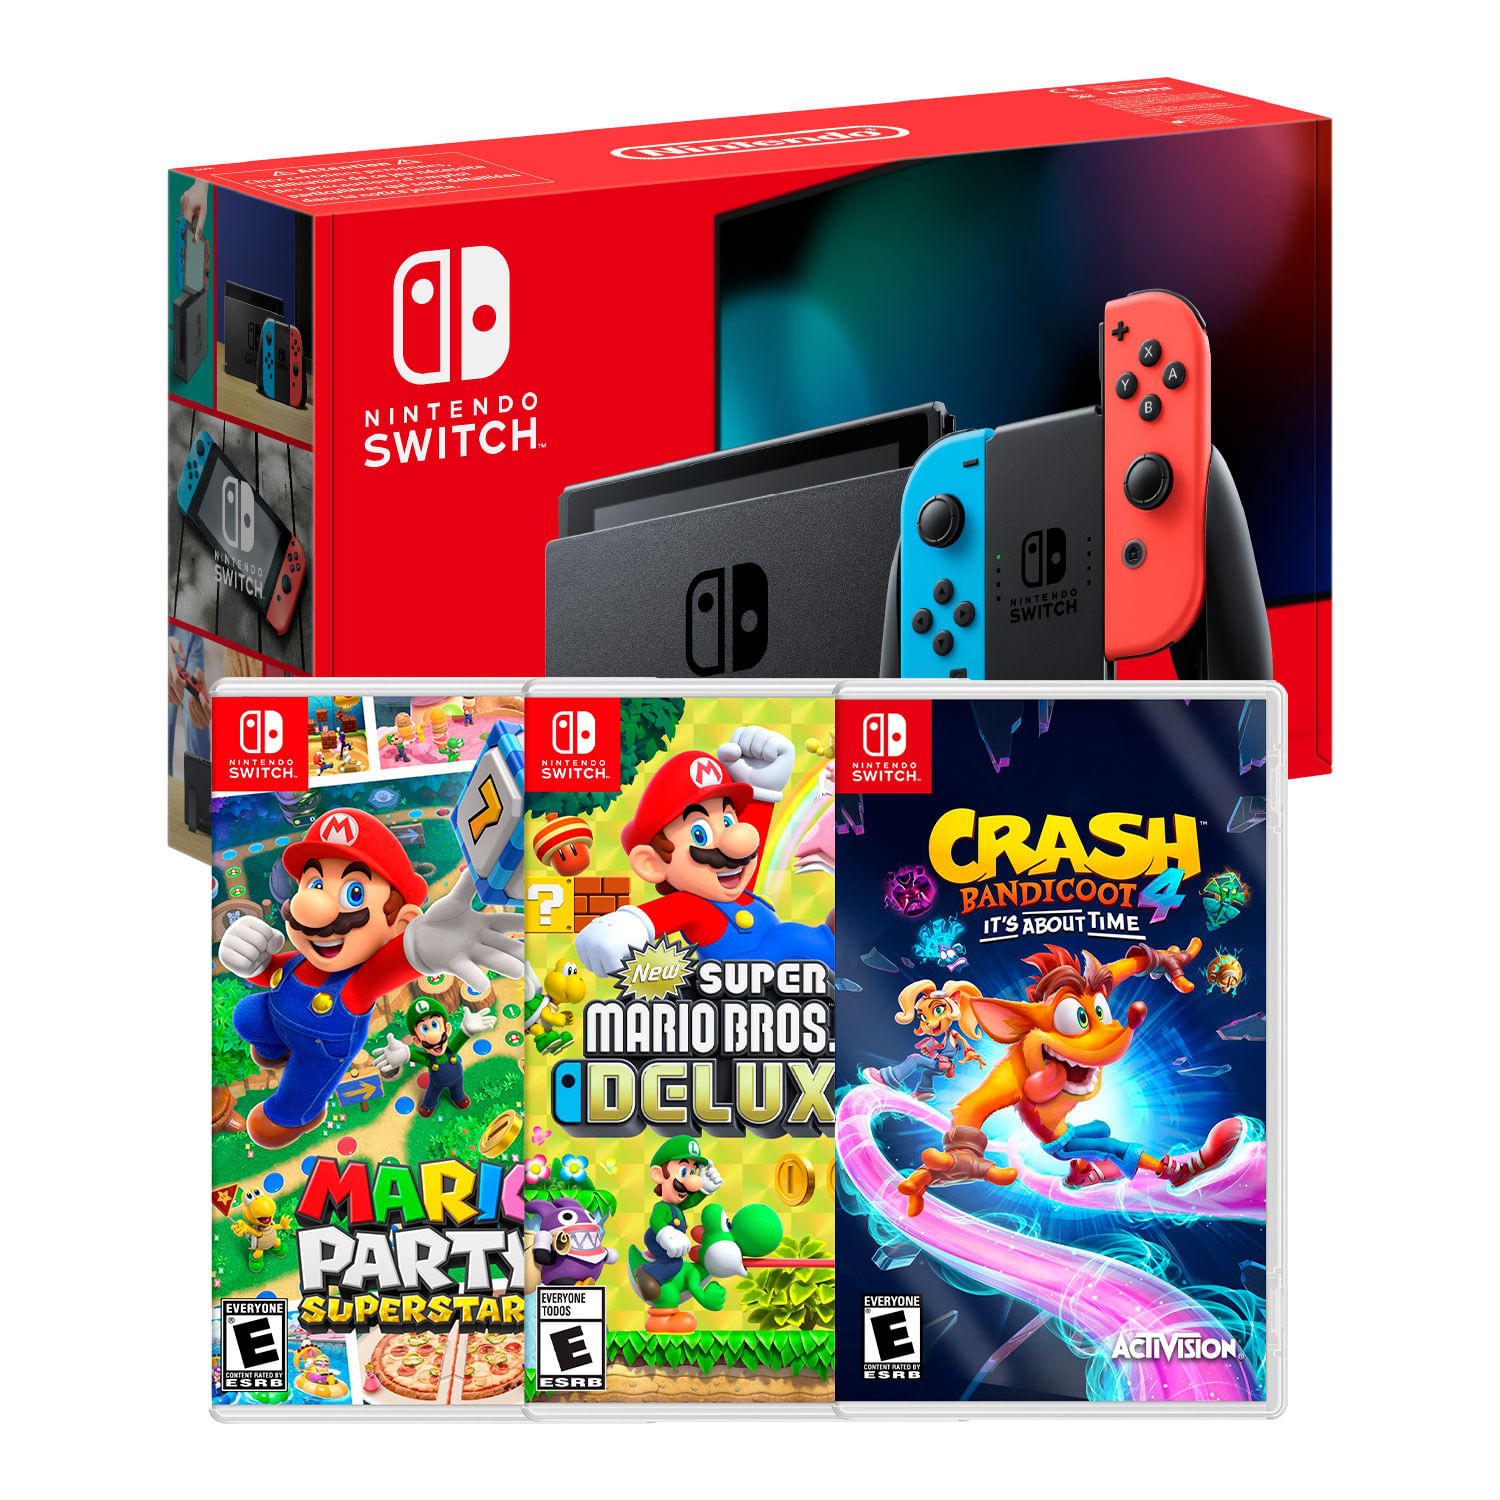 Consola Nintendo Switch Neon 2019 + Mario Party Superstar + New Super Mario Bros + Crash Bandicoot